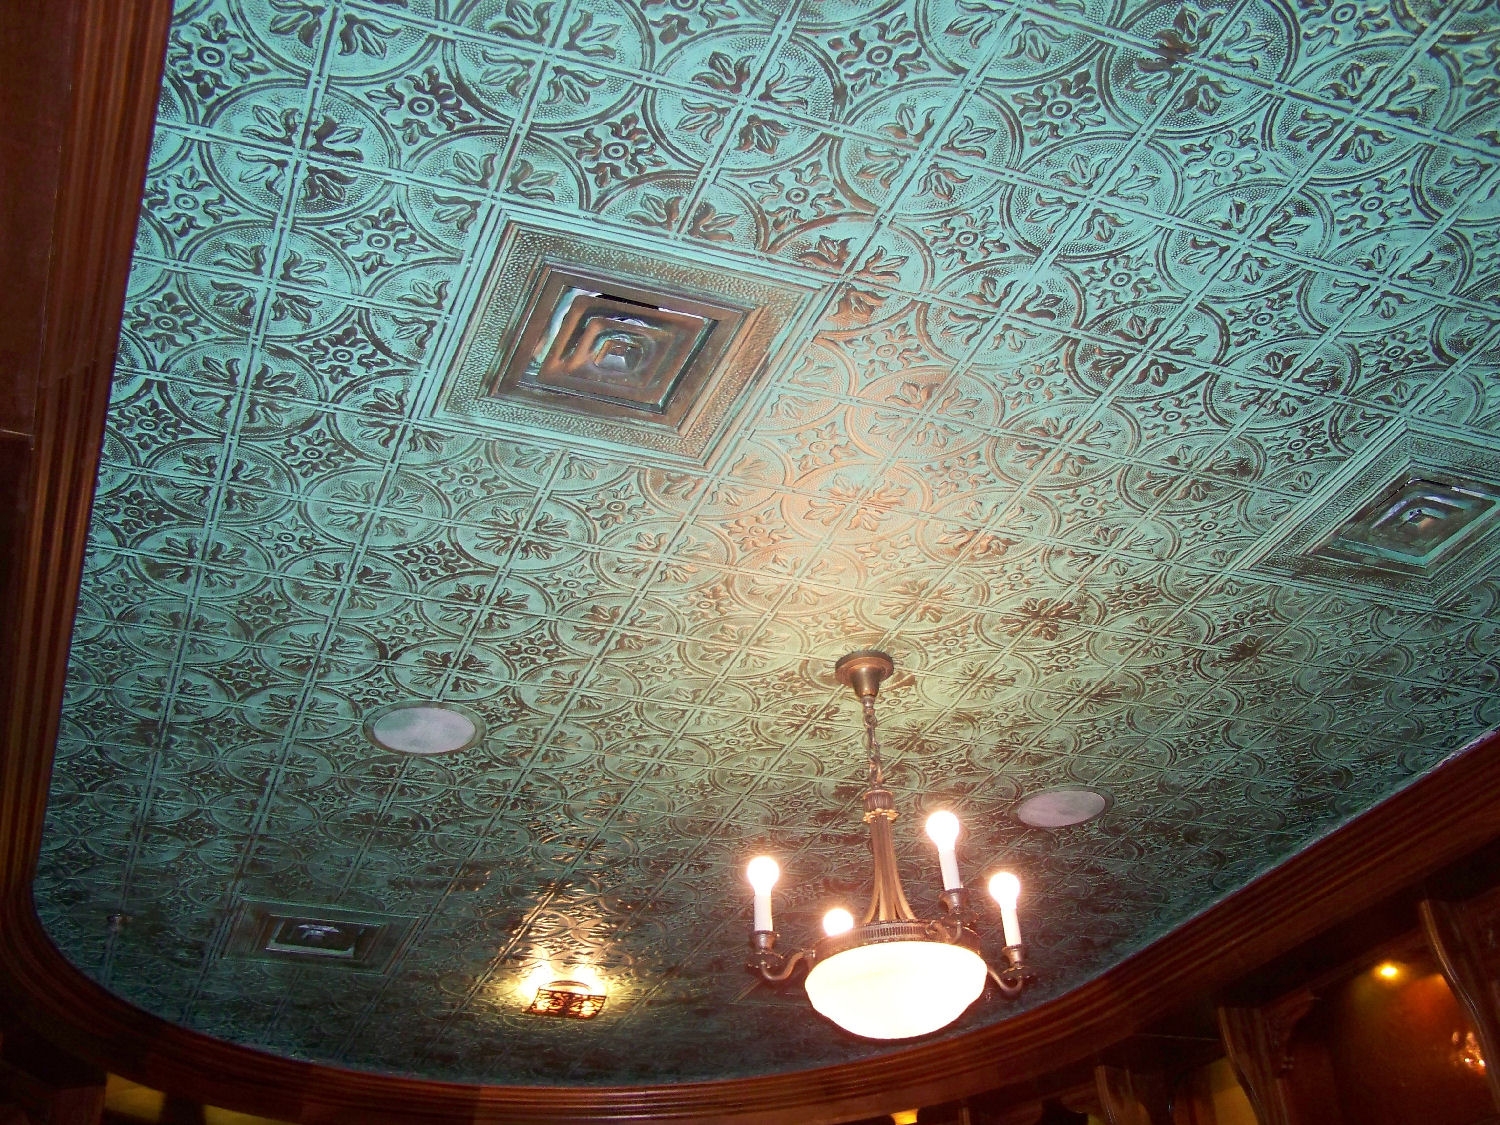 Vintage Copper Ceiling Tiles Vintage Copper Ceiling Tiles punched tin ceiling tiles images tile flooring design ideas 1500 X 1125